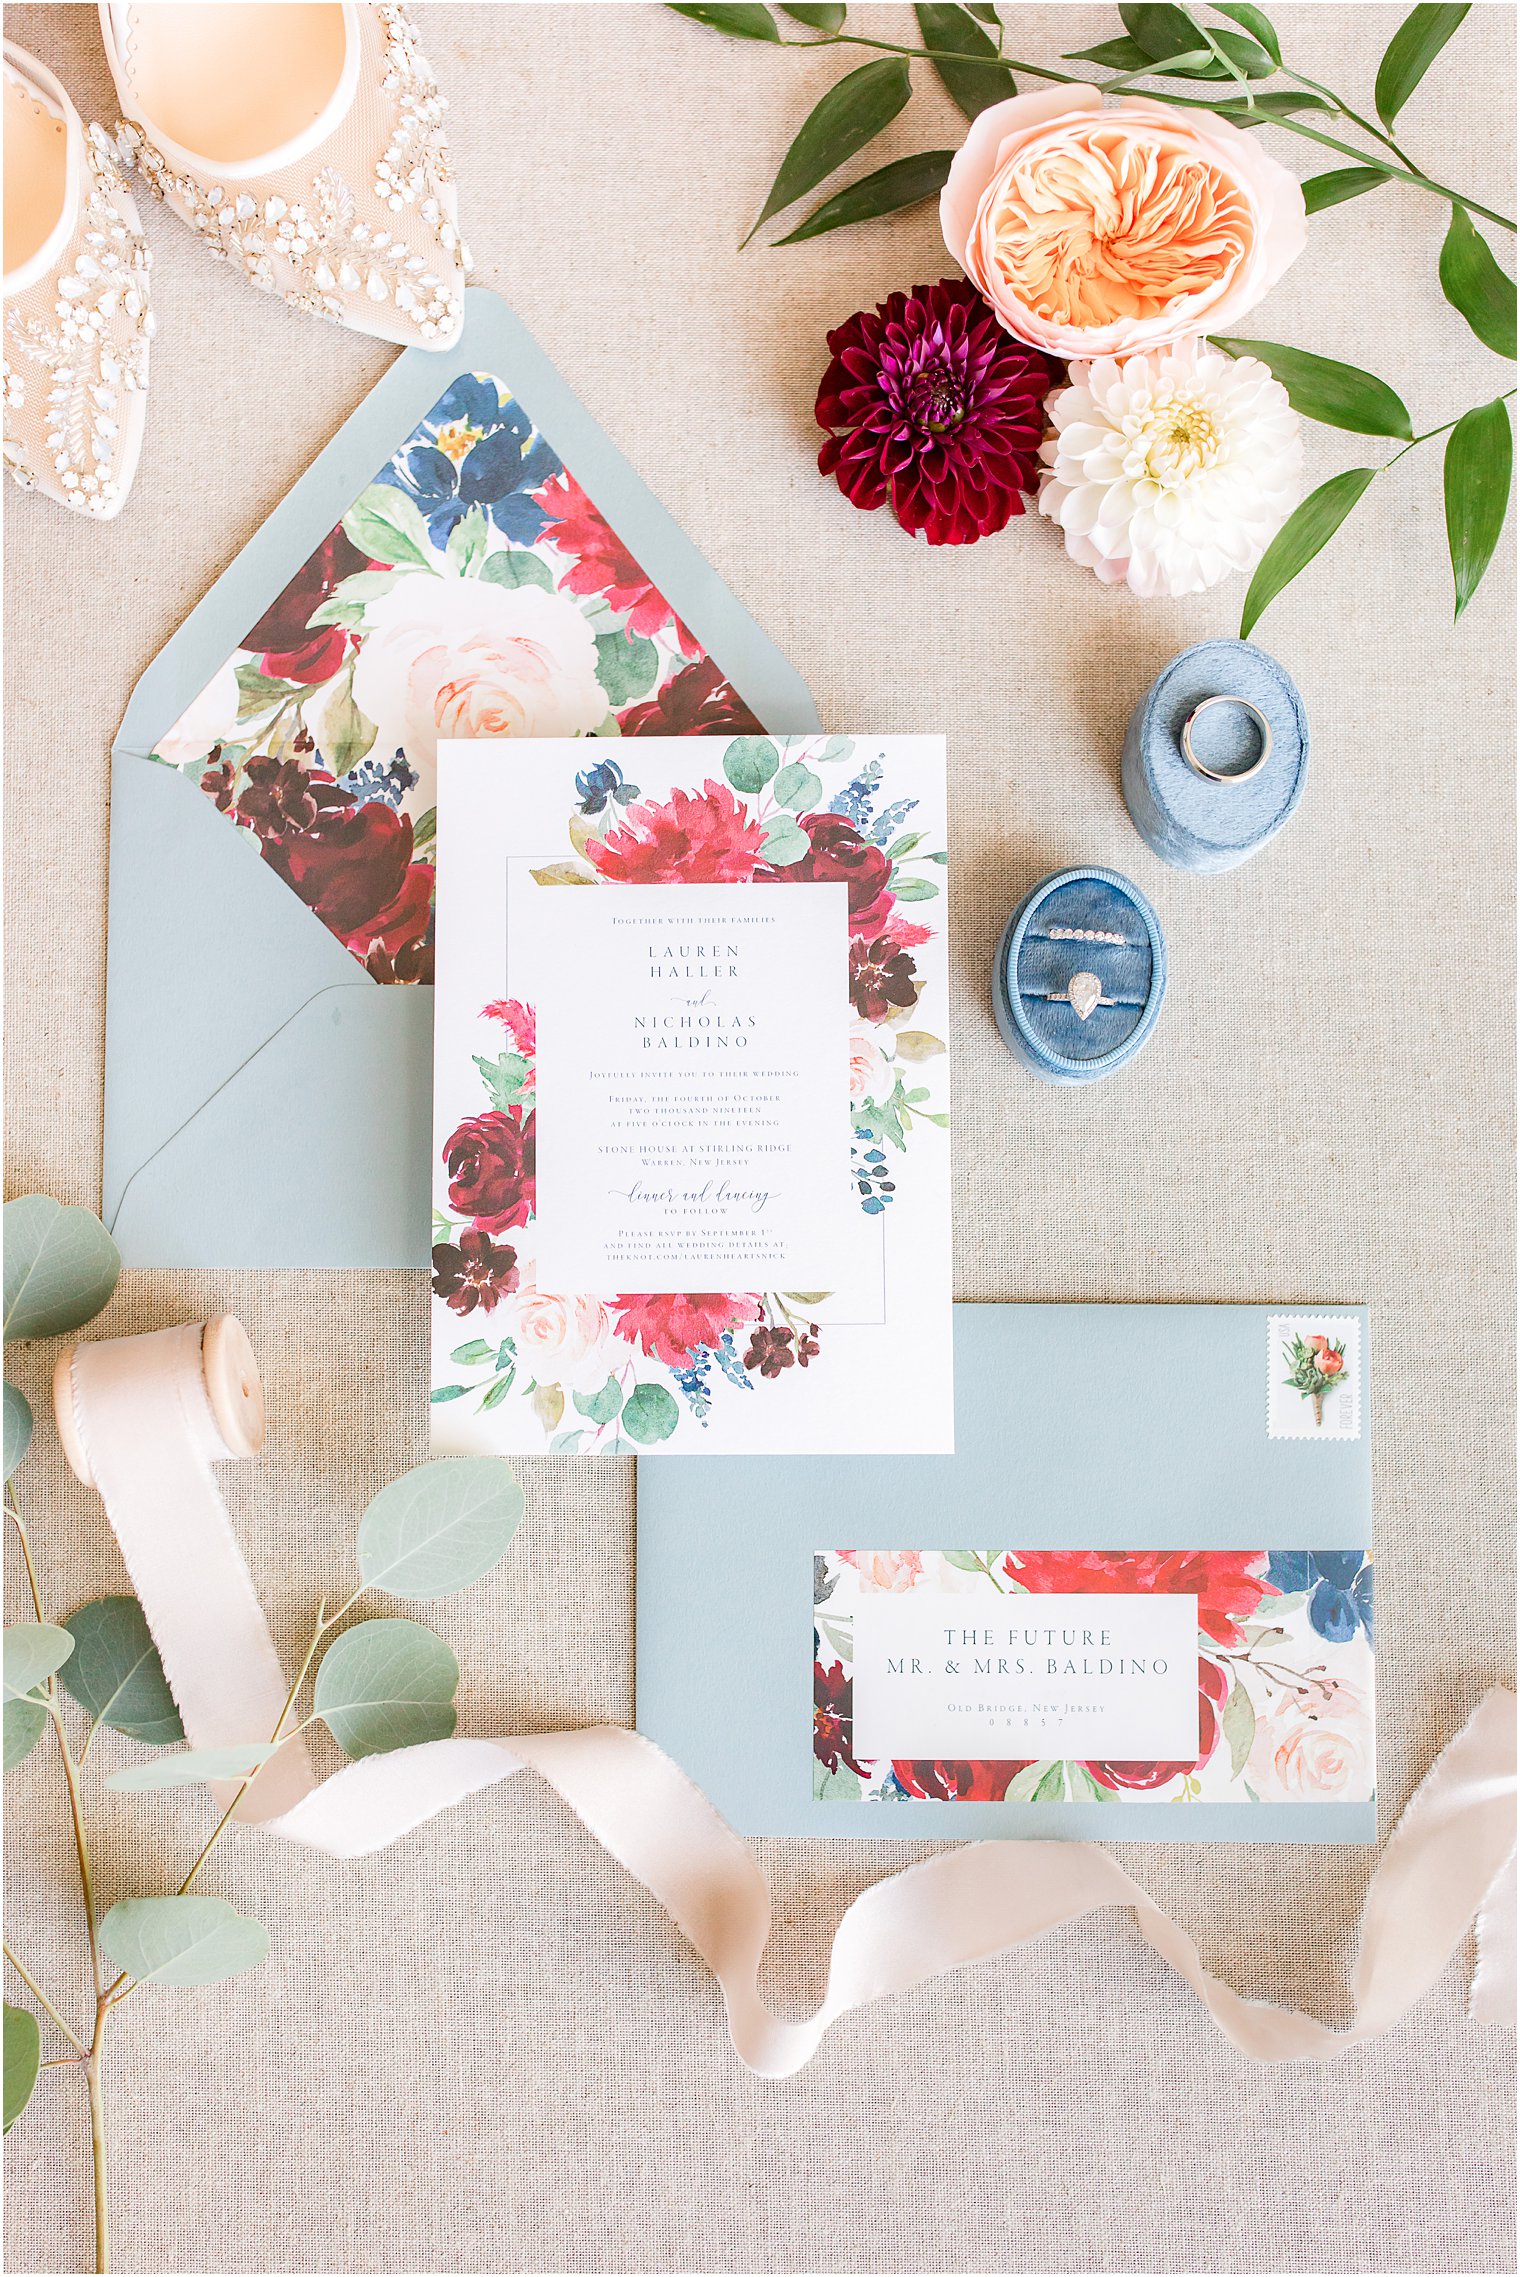 Floral watercolor wedding invitation 